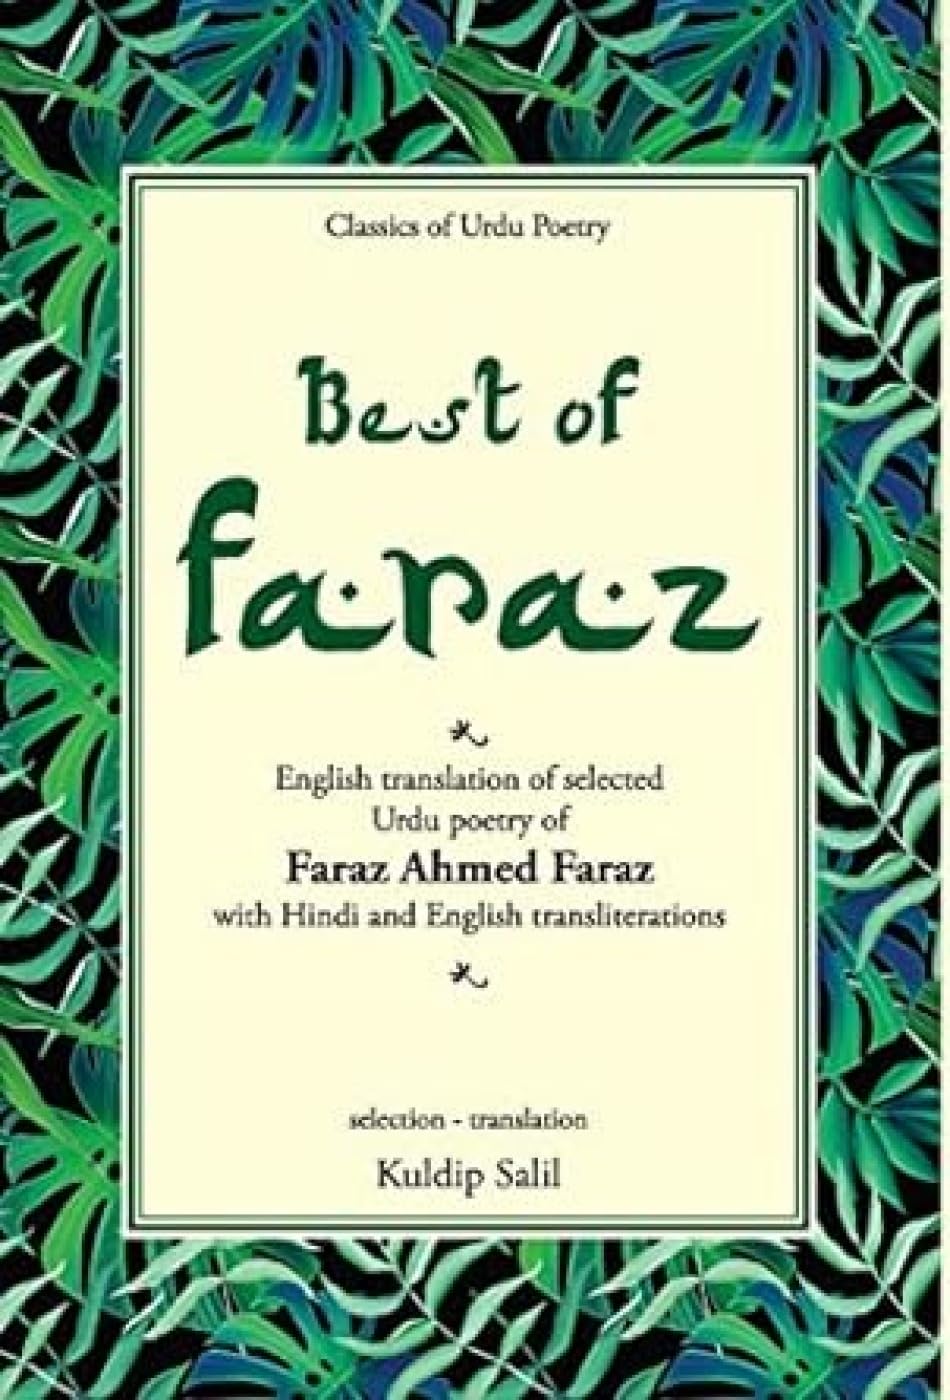 Best of Faraz by Kuldip Salil